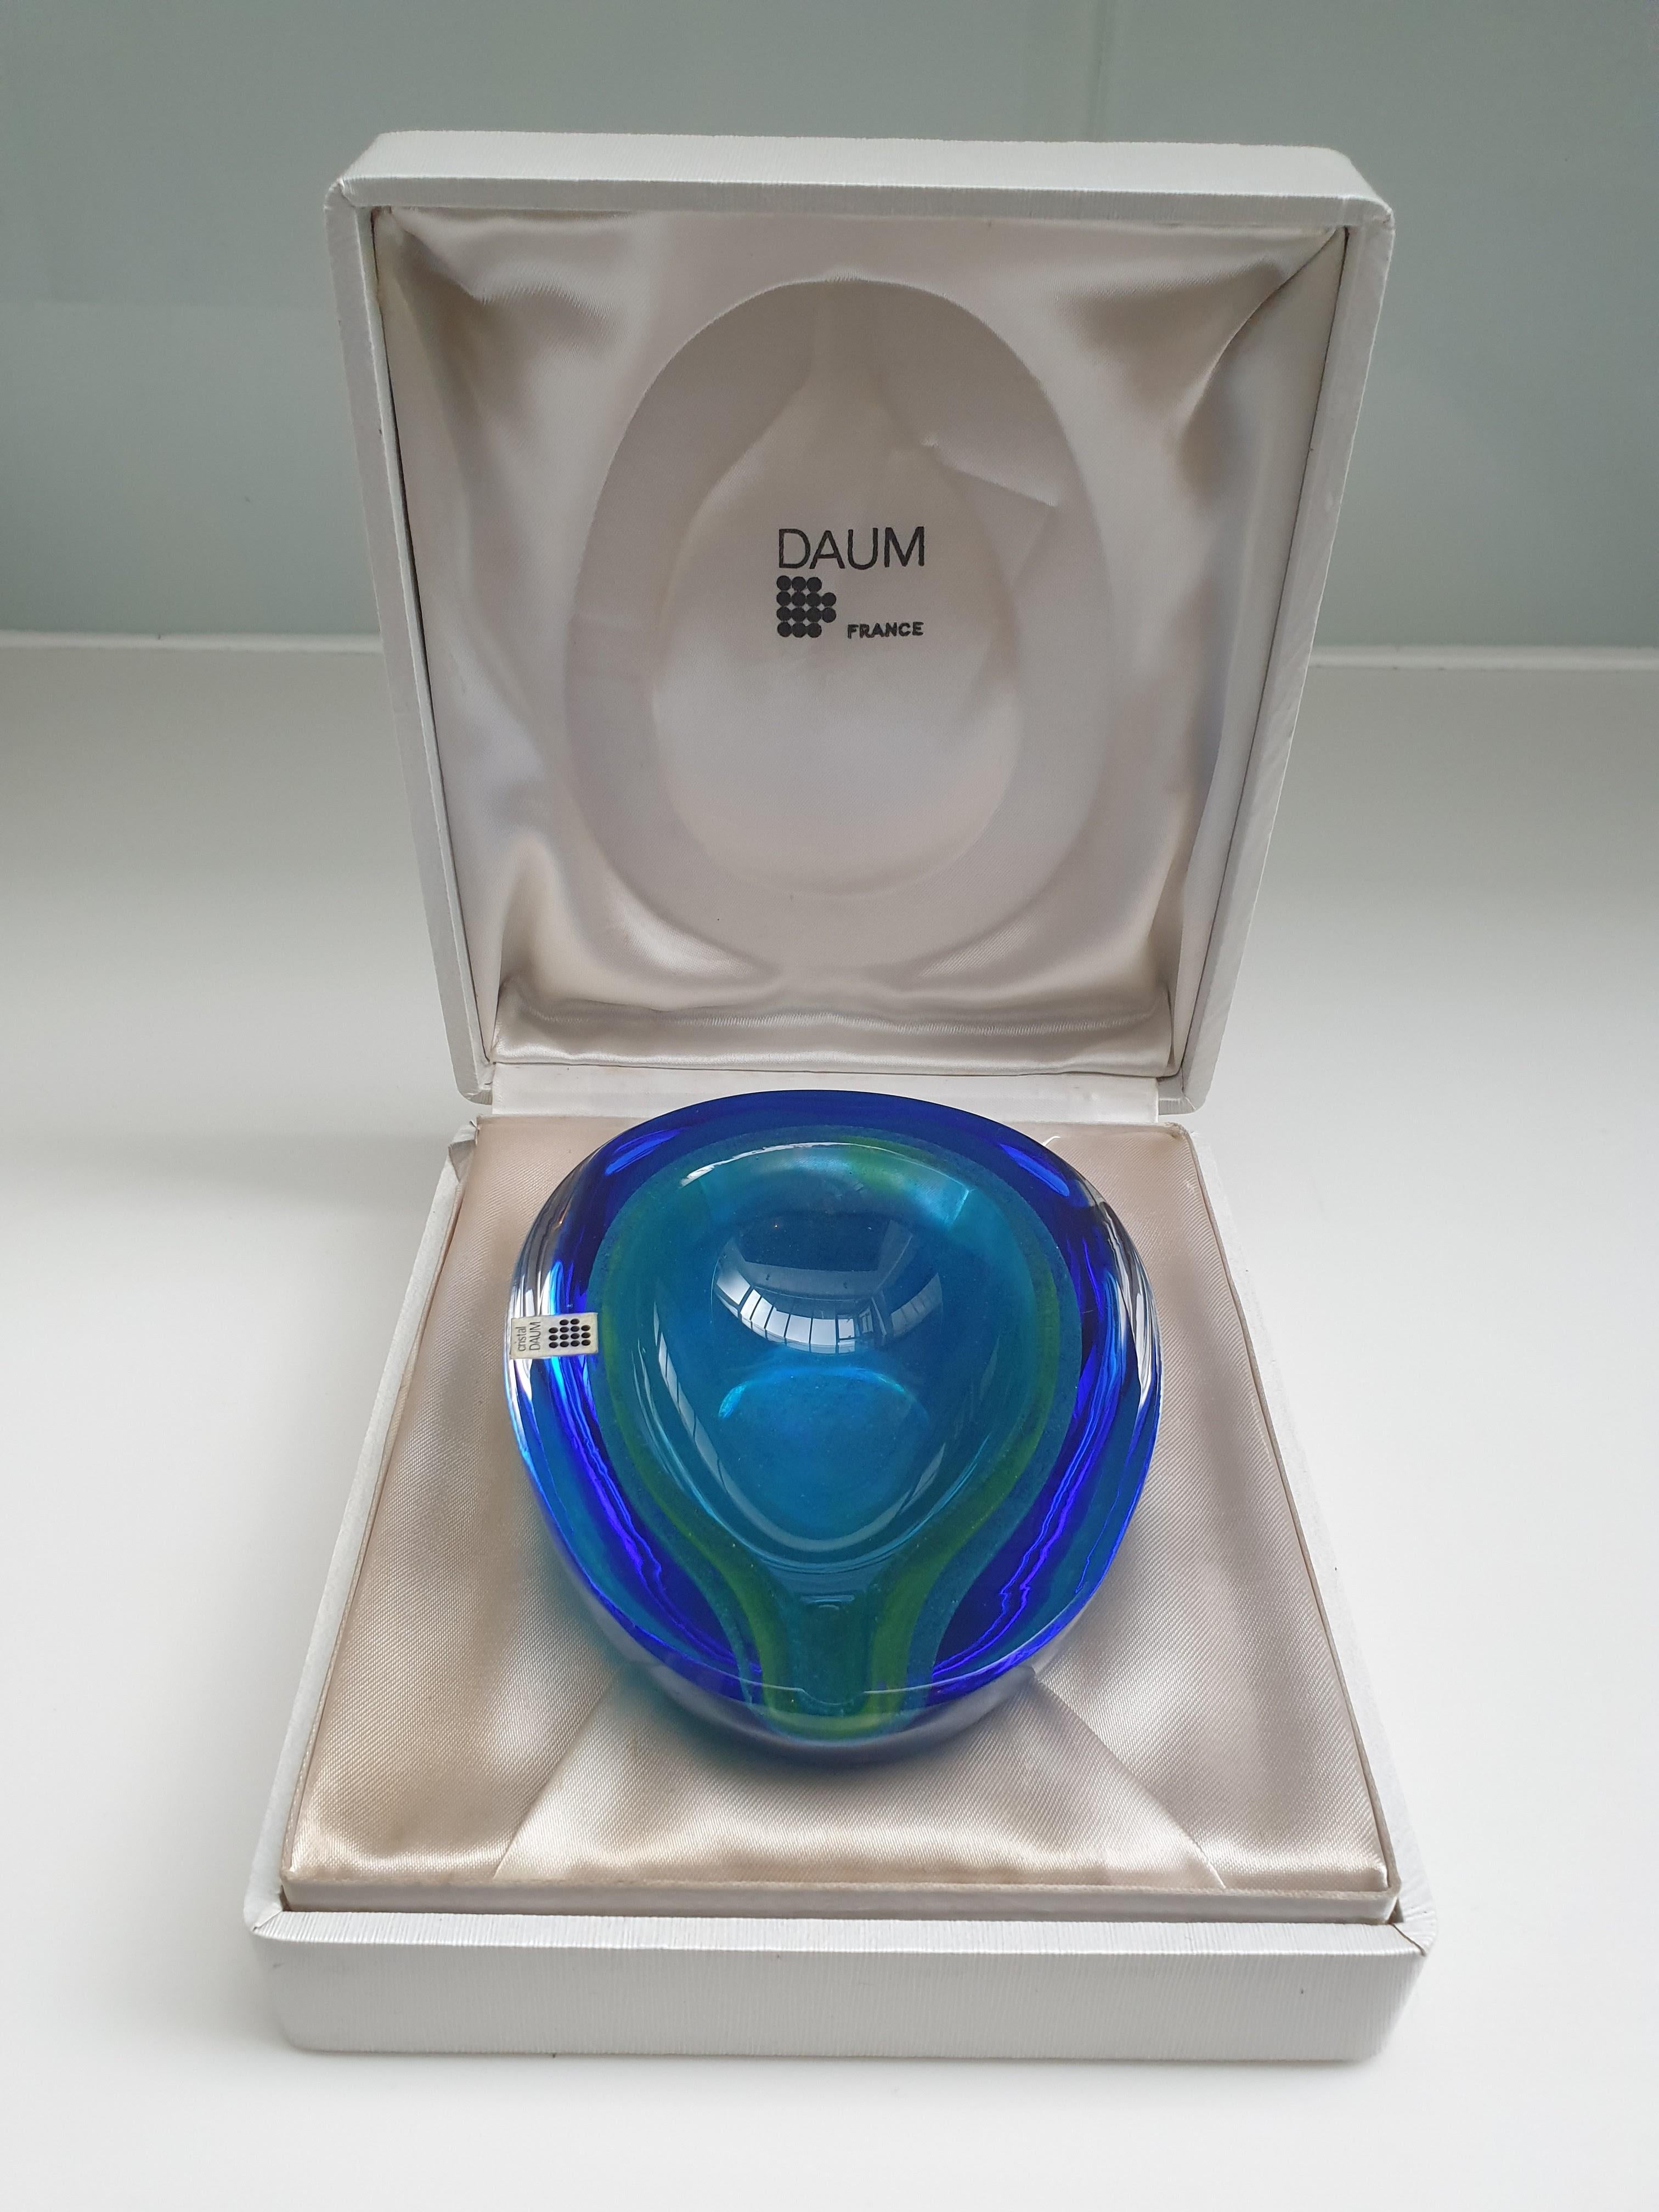 Schöne leuchtende Kristallglasschale/Aschenbecher  von Daum France. Der blau-grüne Farbton erinnert an das Meer. Es ist ungewöhnlich, einen so schönen Ton zu finden. Sie wird mit einem Daum-Aufkleber und einer eingravierten Signatur auf dem Sockel